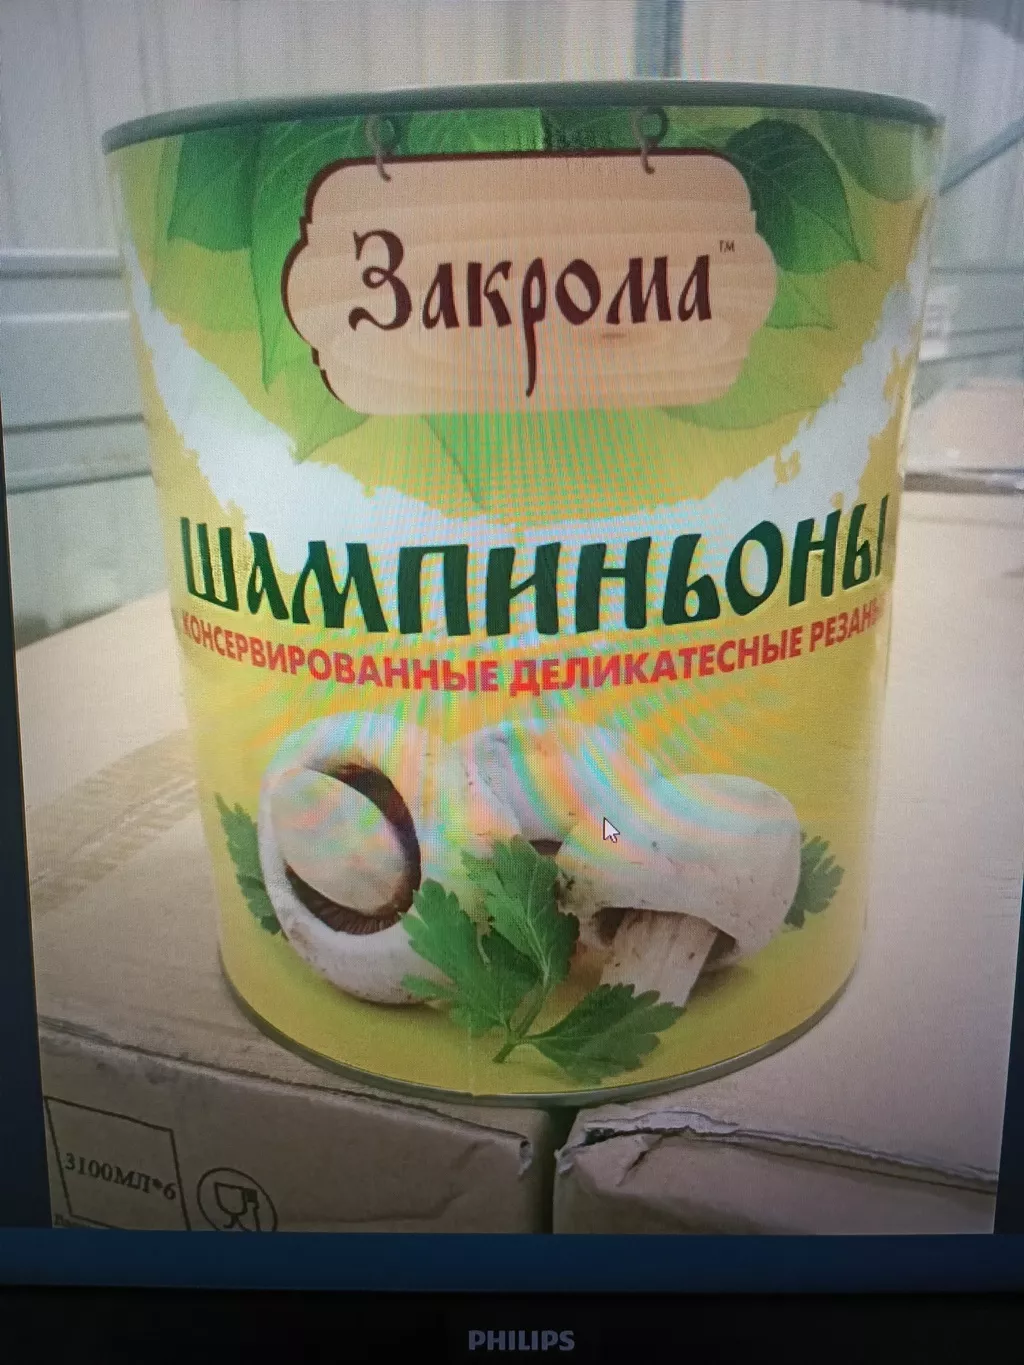  консервы шампиньоны резаные 3100 мл ж/б в Санкт-Петербурге